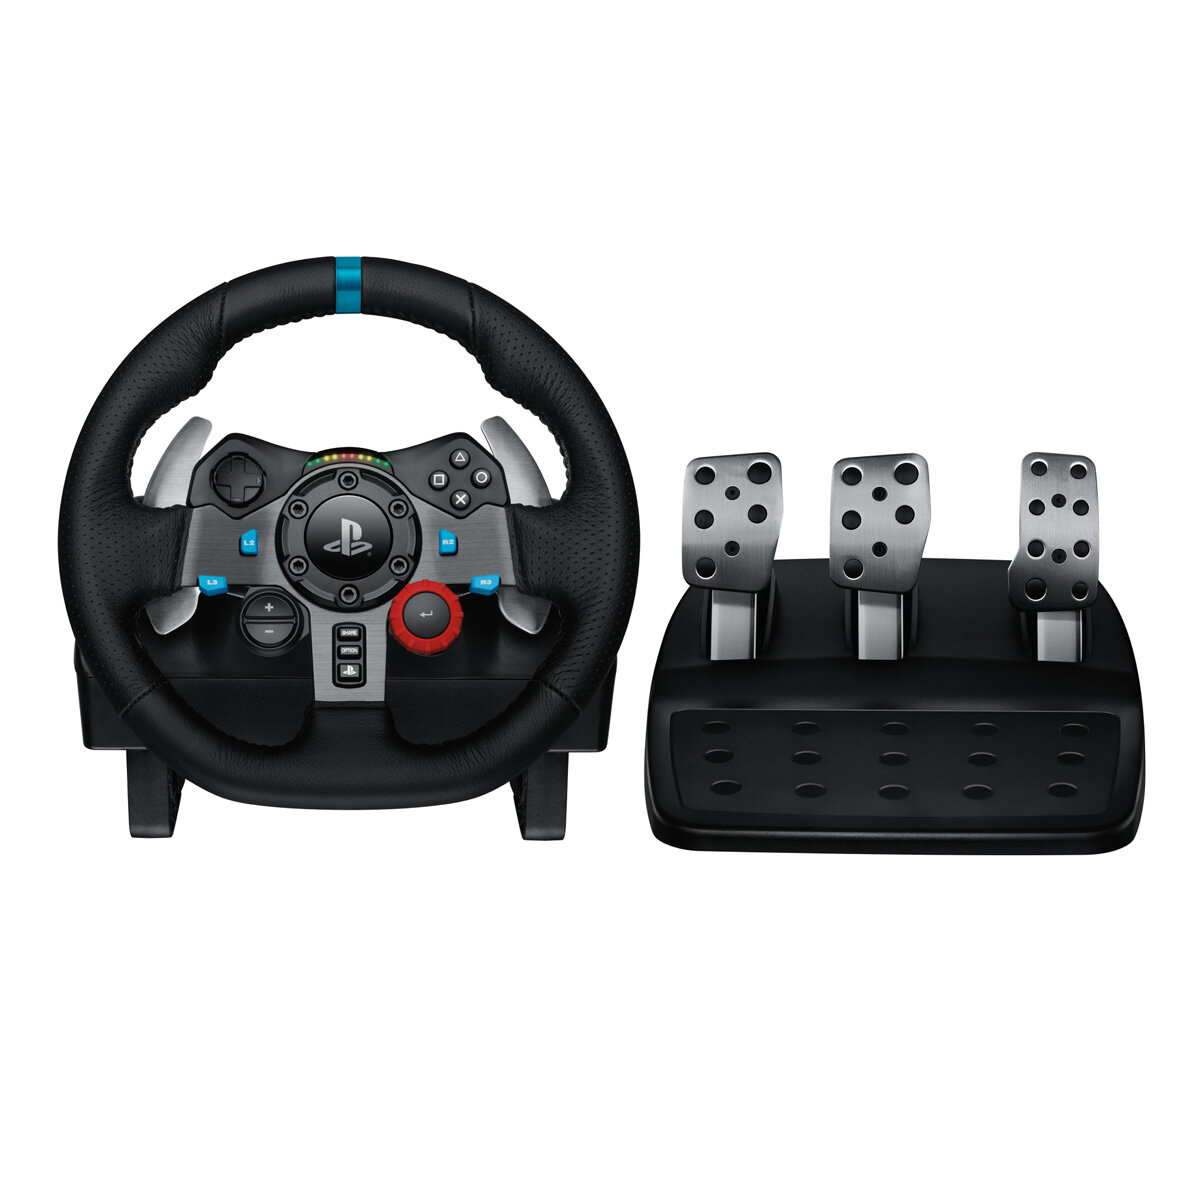 Logitech G Racing Adapter - Mix and Match Wheel & Pedals